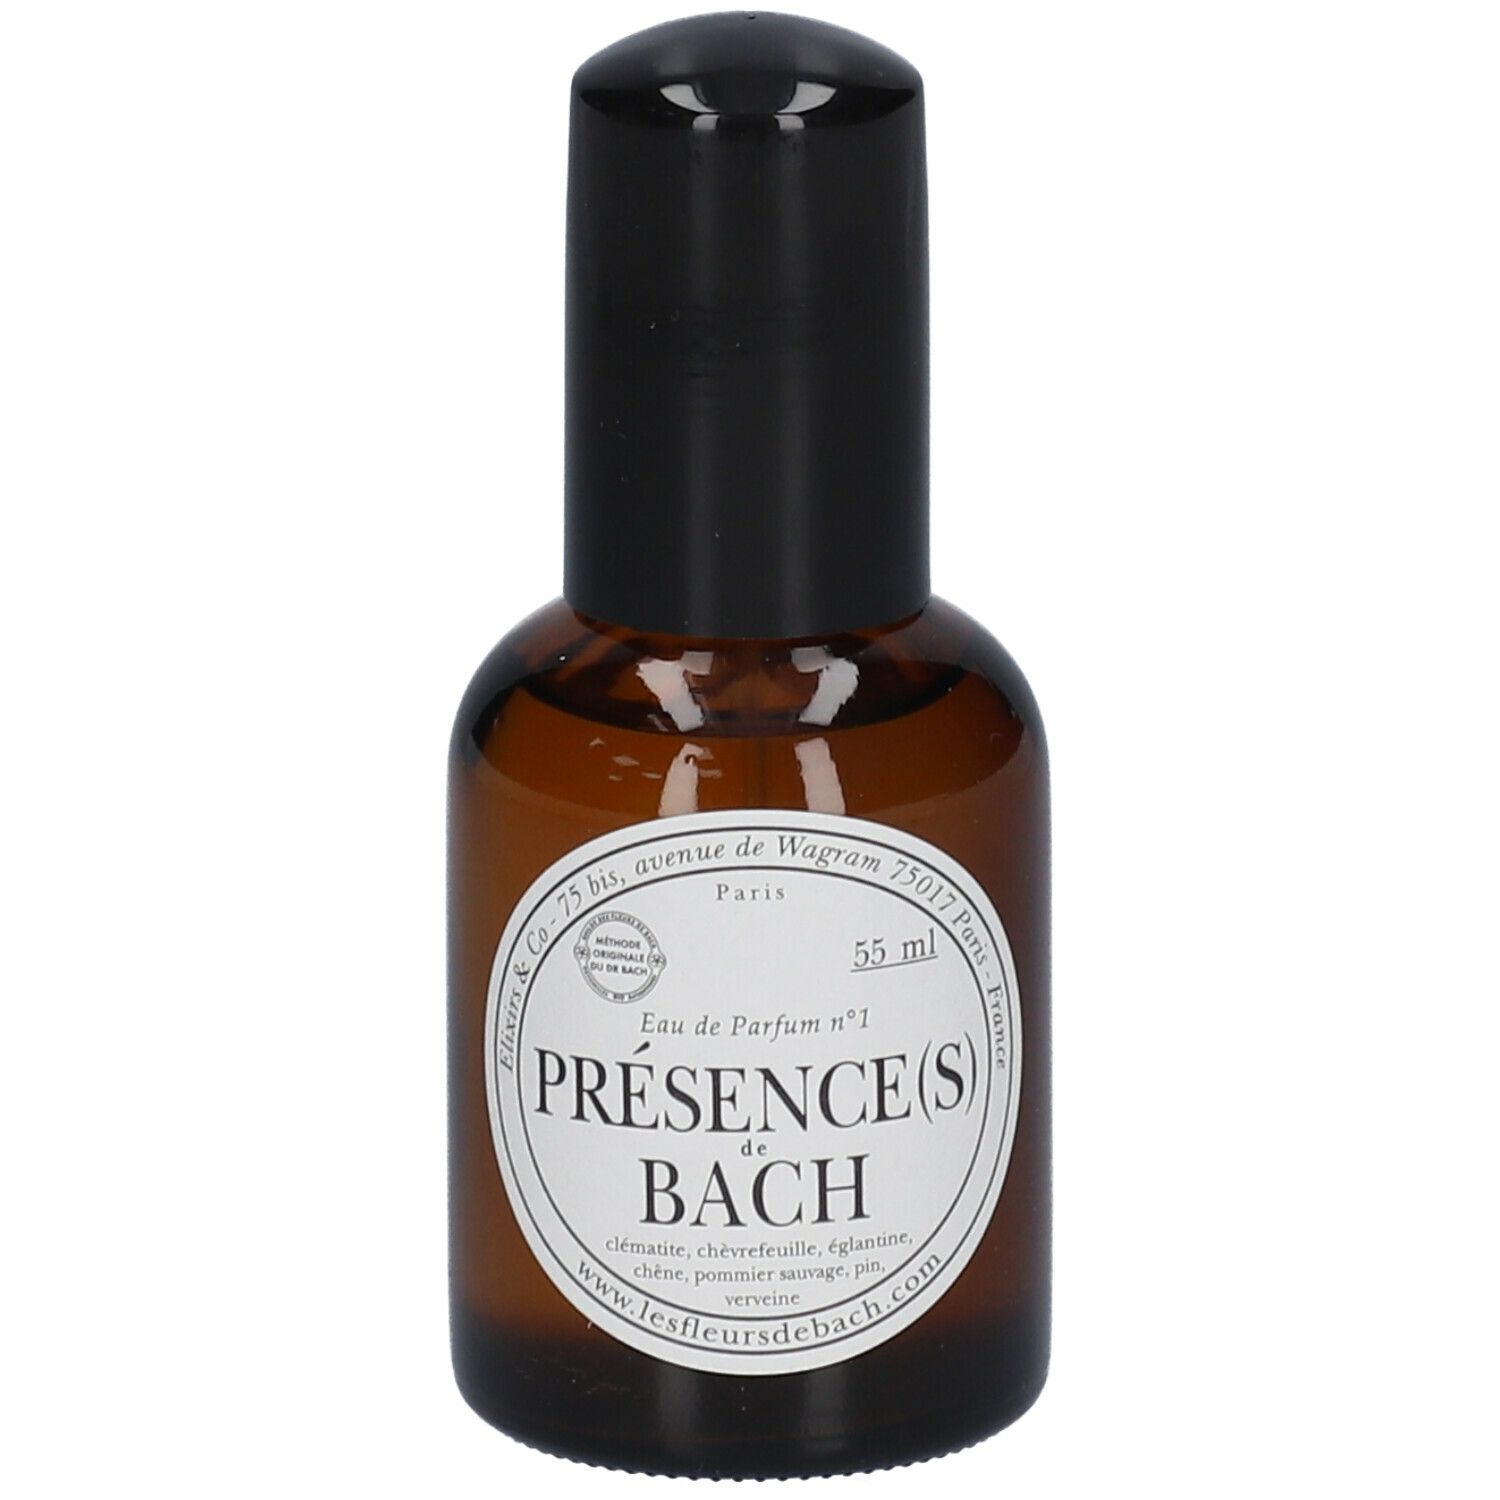 COSMXPERT Elixirs & Co Précence(s) de Bach Eau der Parfum no. 1